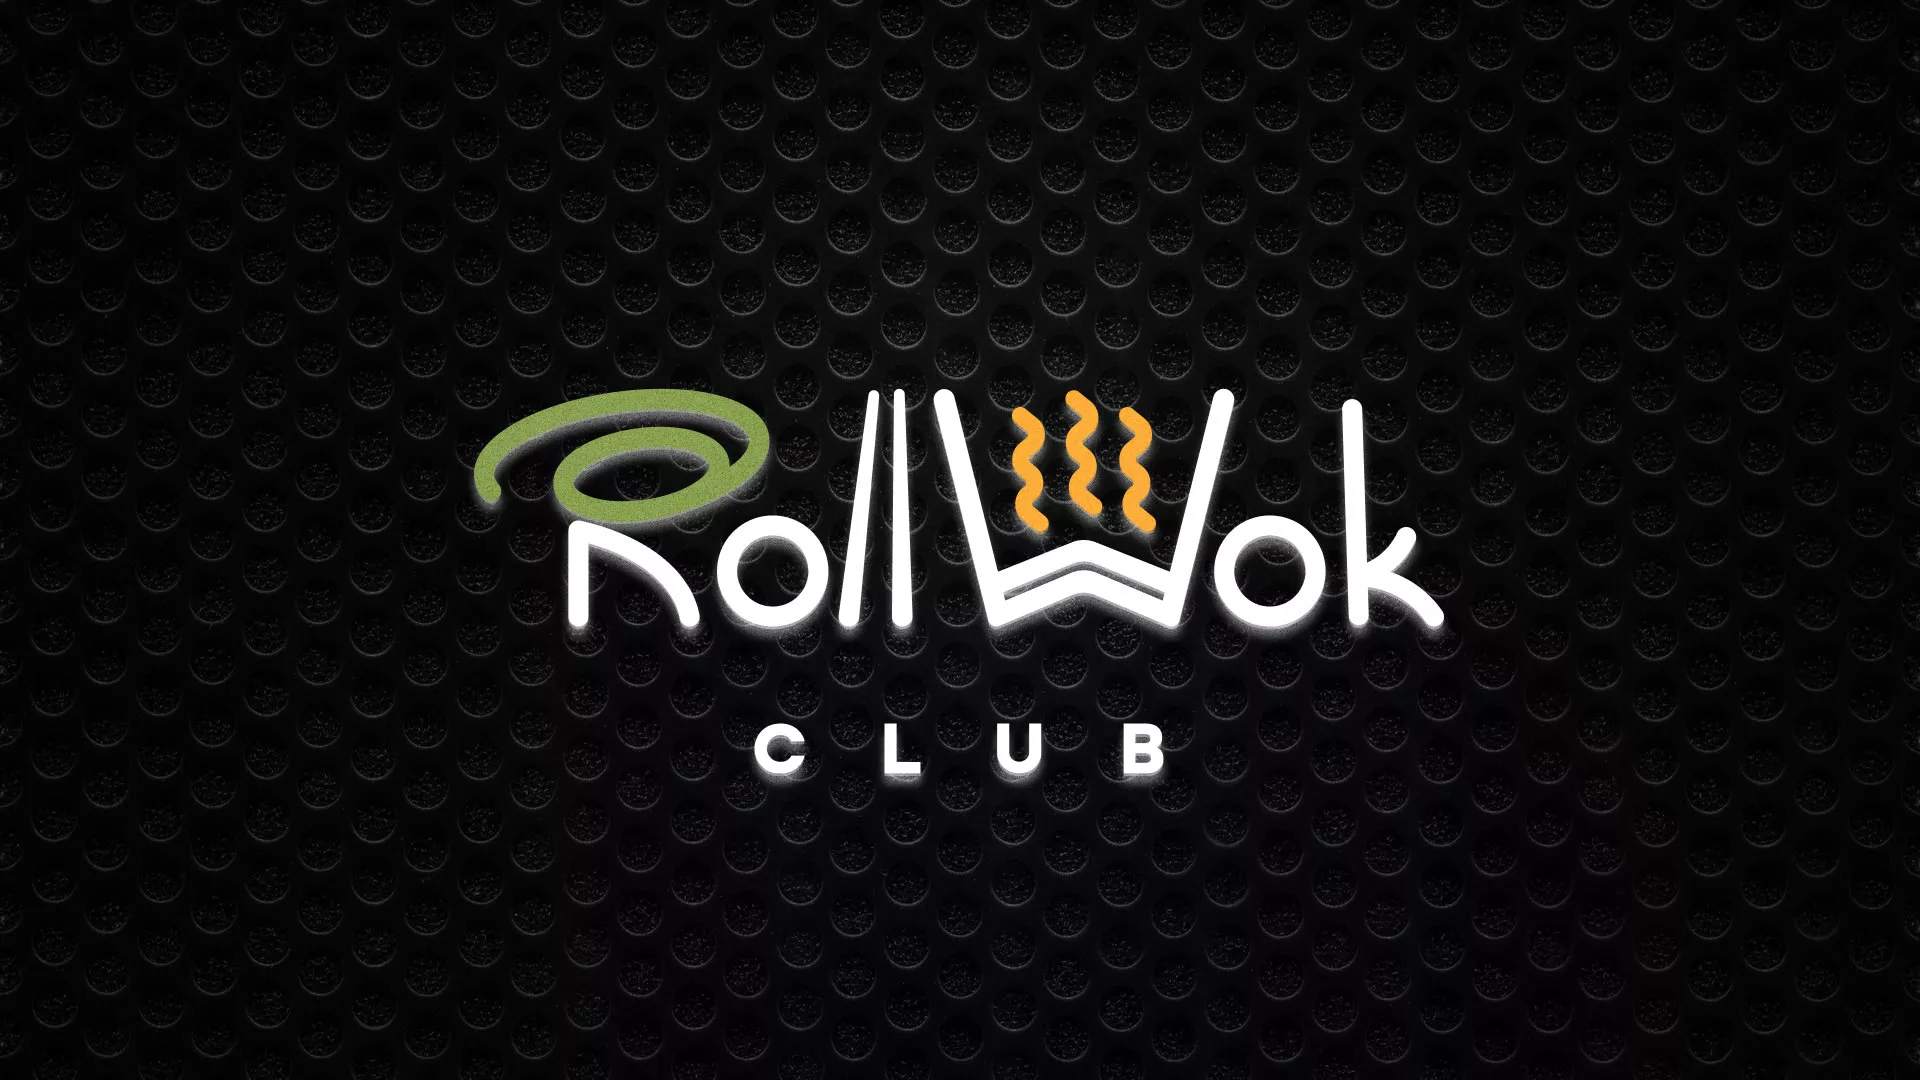 Брендирование торговых точек суши-бара «Roll Wok Club» в Асино